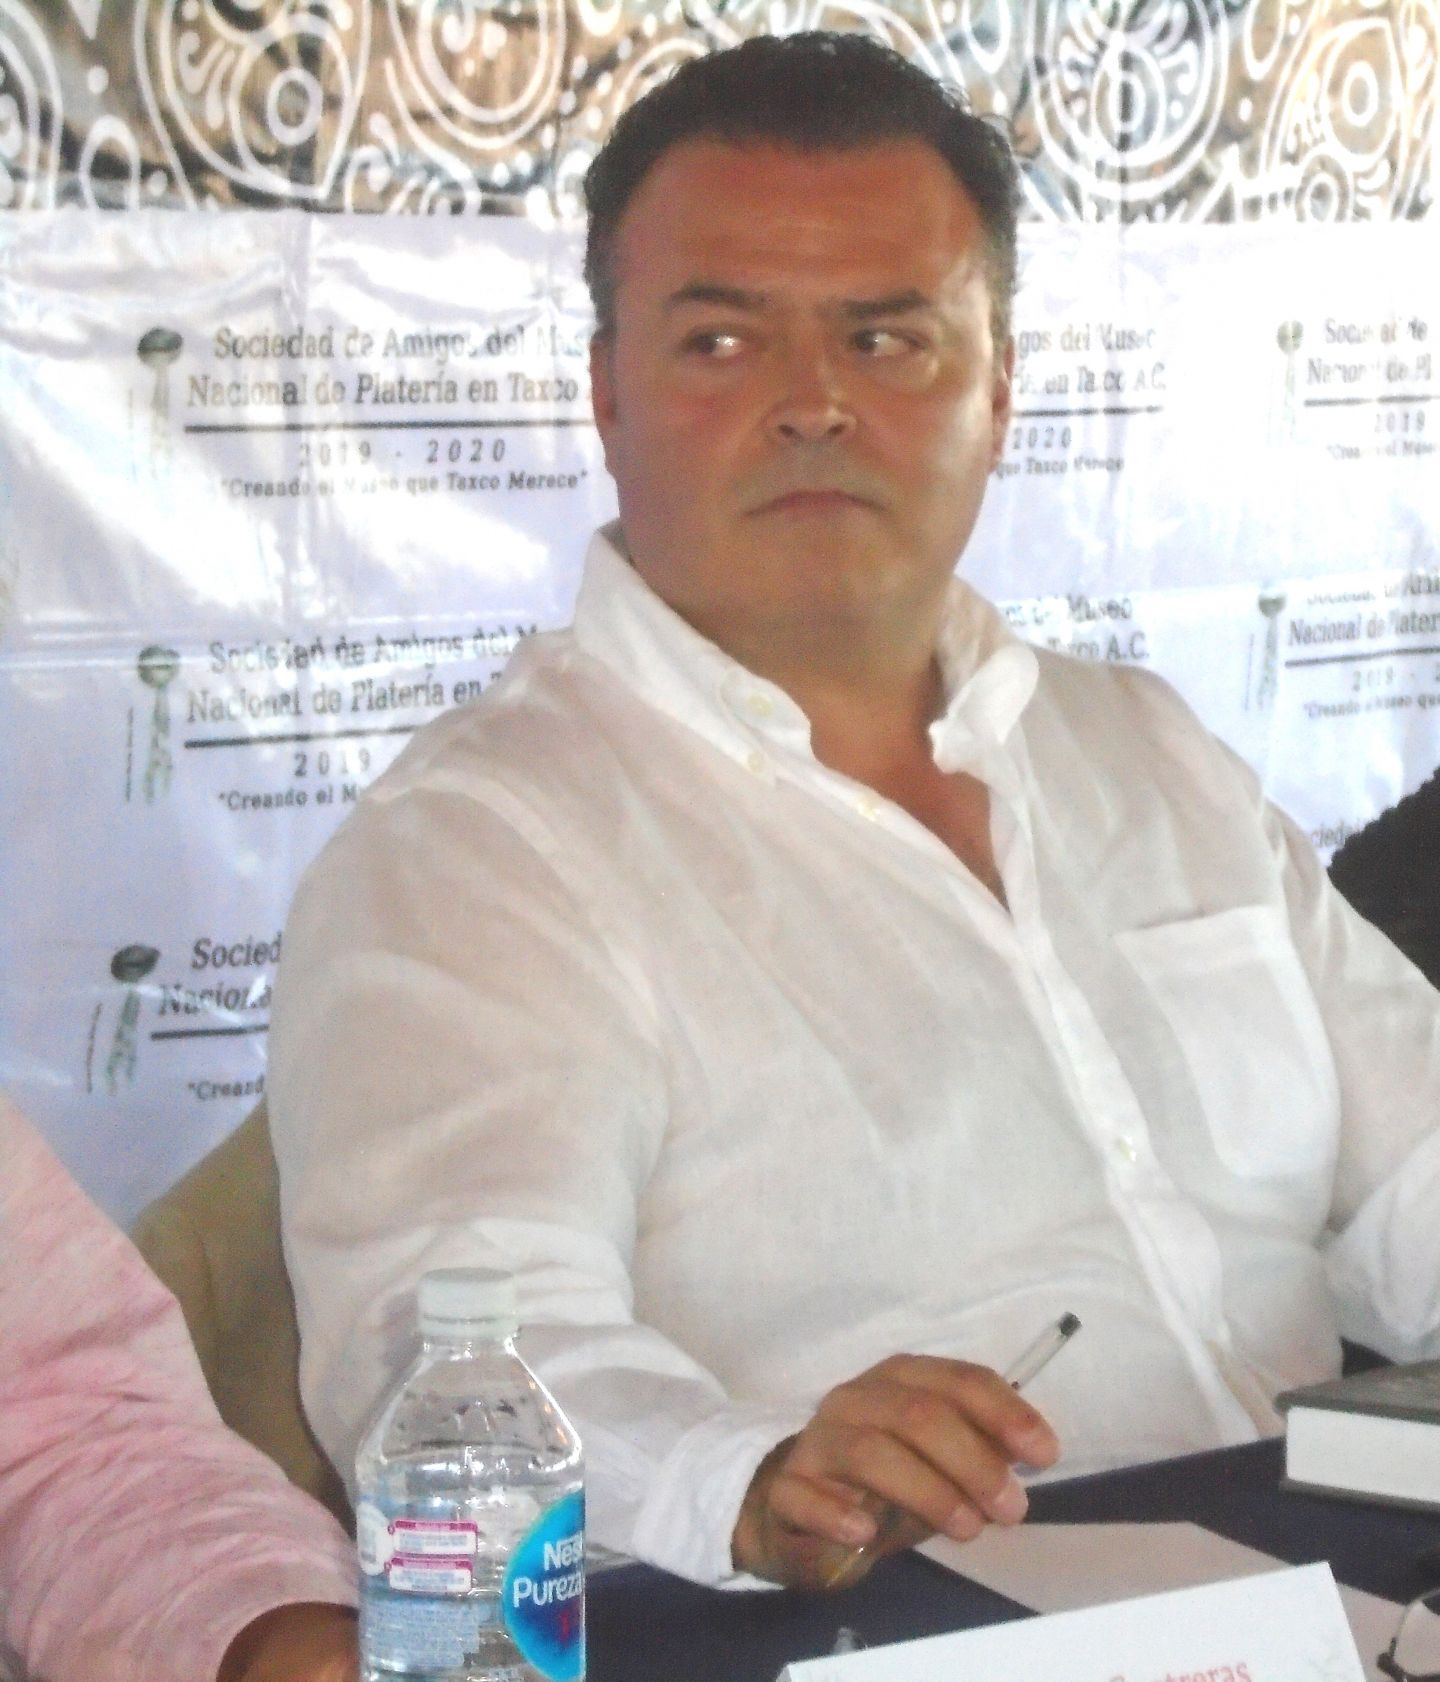 
La creación del Museo Nacional de la Platearía de Taxco se debe apoyar para lograr el sueño de los taxqueños’: Dice diputado